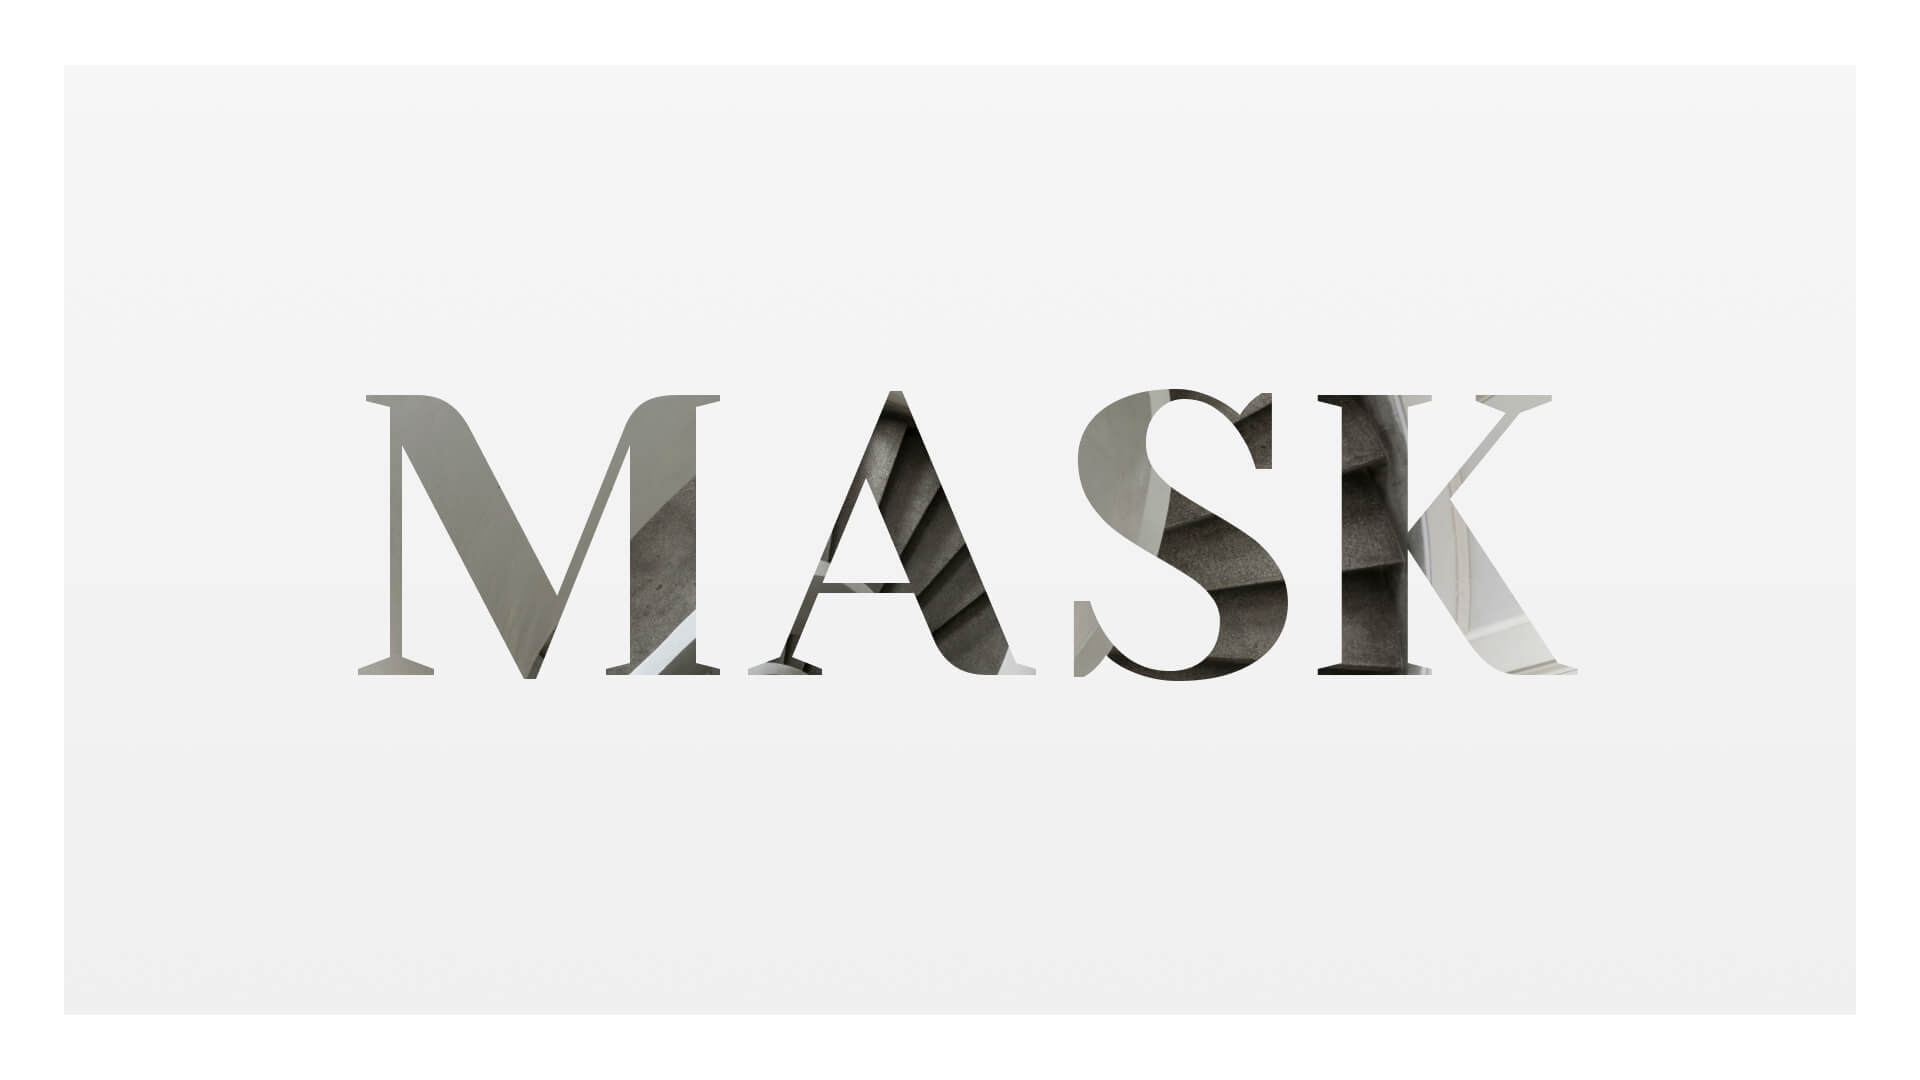 画像をMASKというテキストでマスクしているサンプル